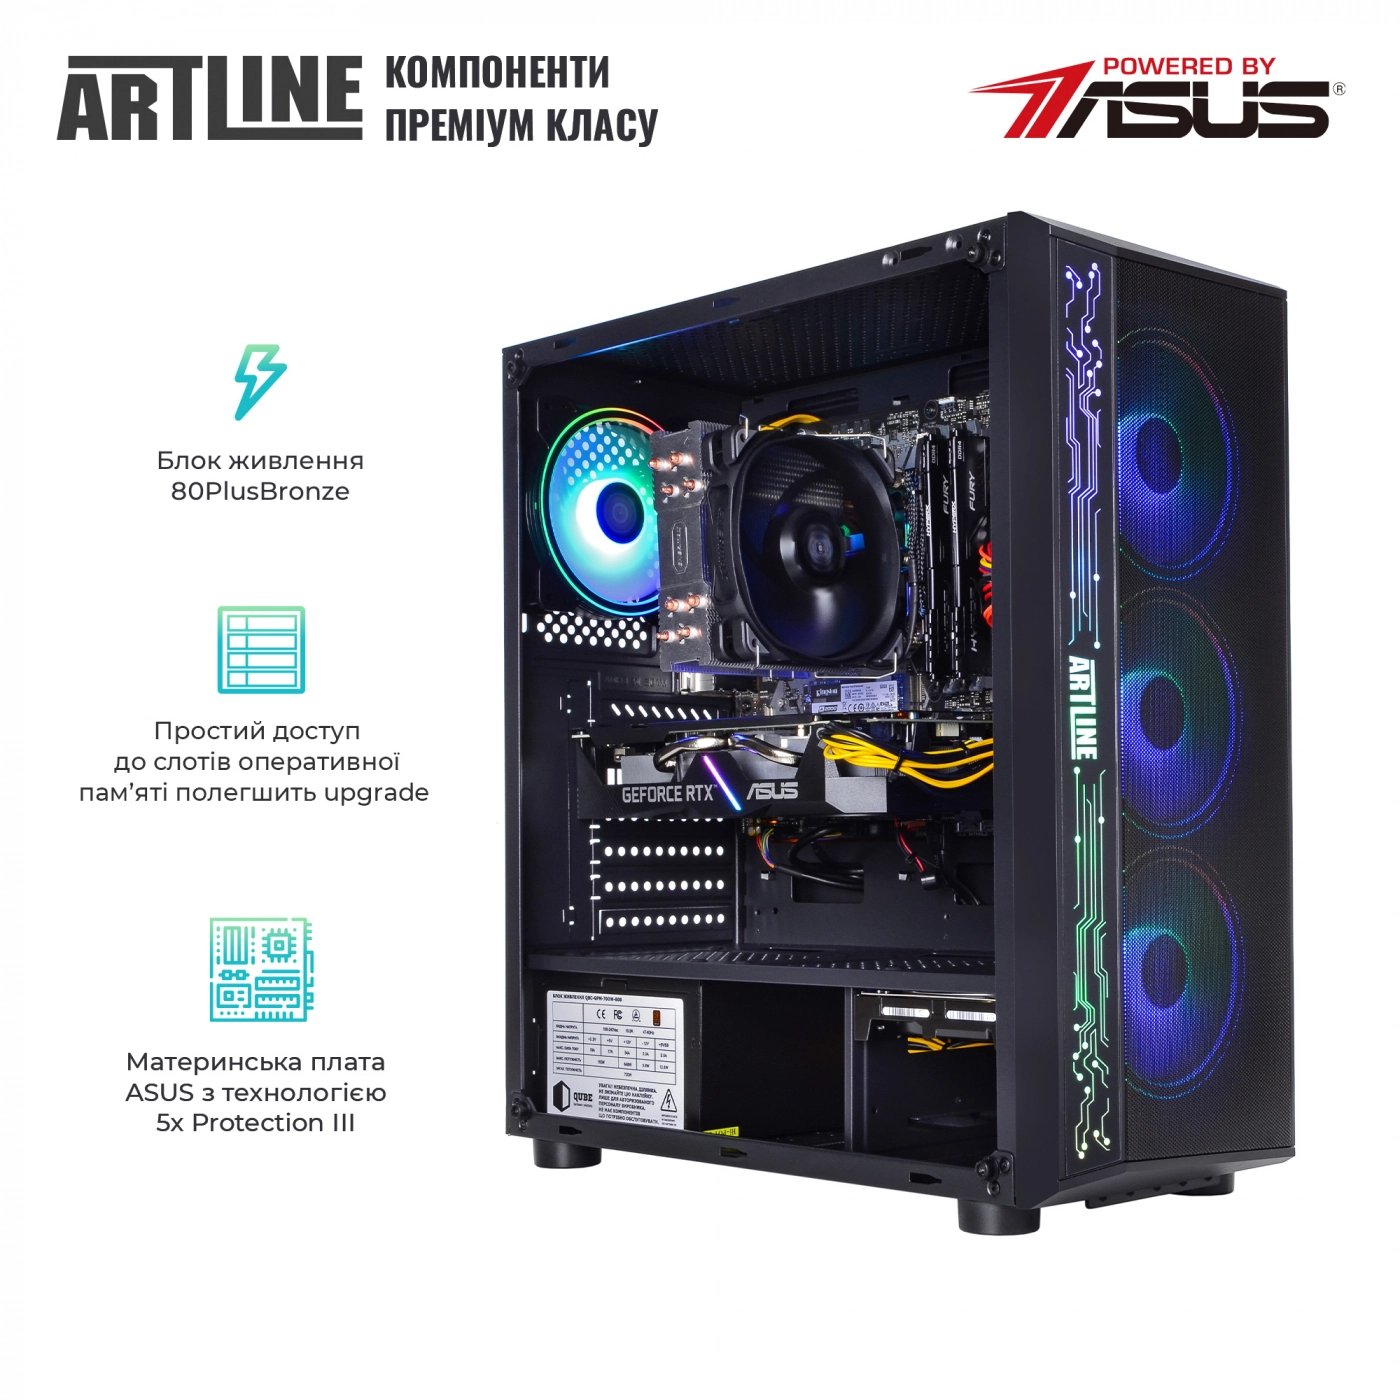 Купить Компьютер ARTLINE Gaming X57v42 - фото 2